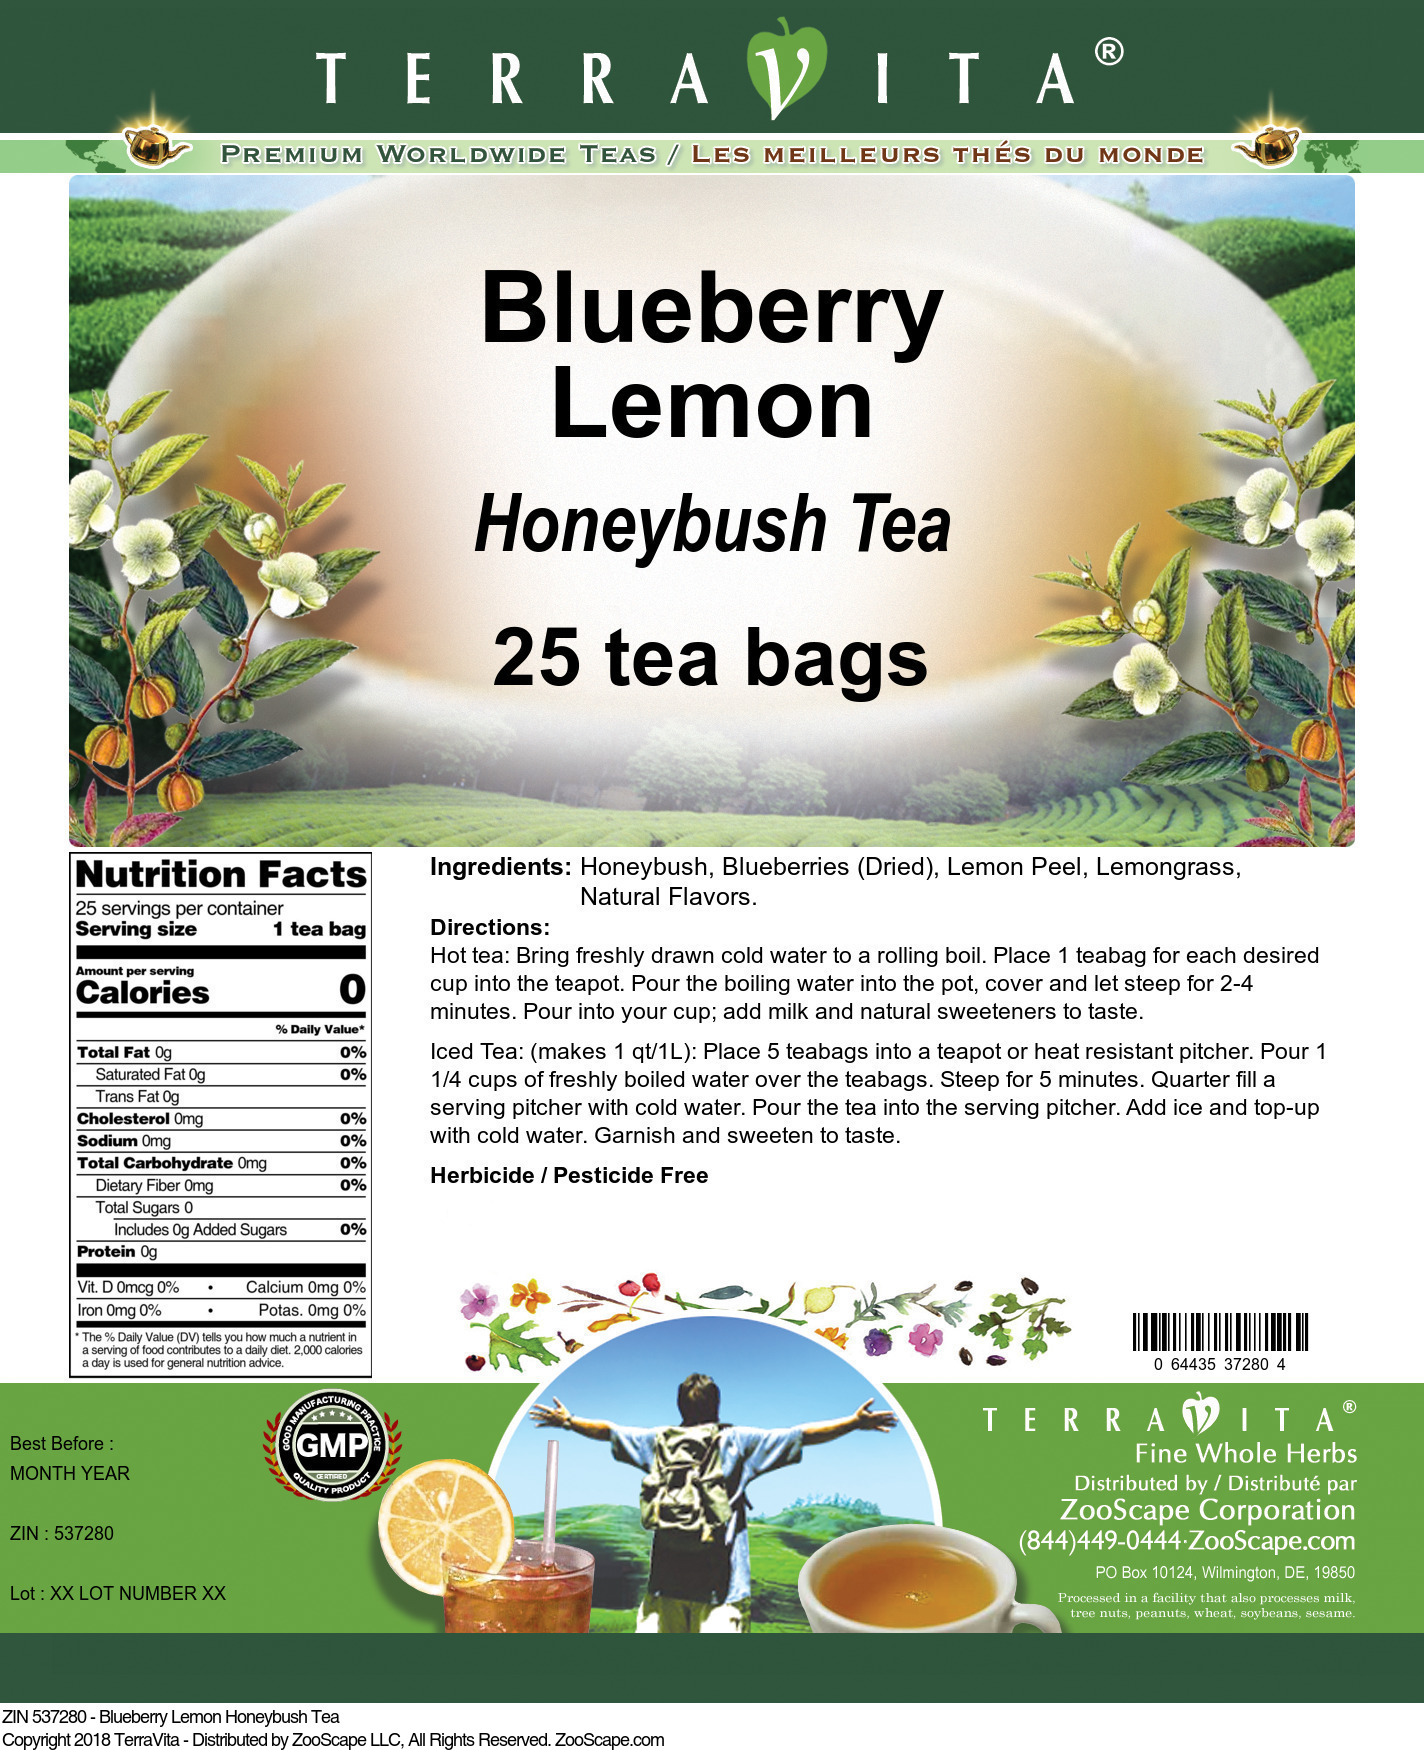 Blueberry Lemon Honeybush Tea - Label